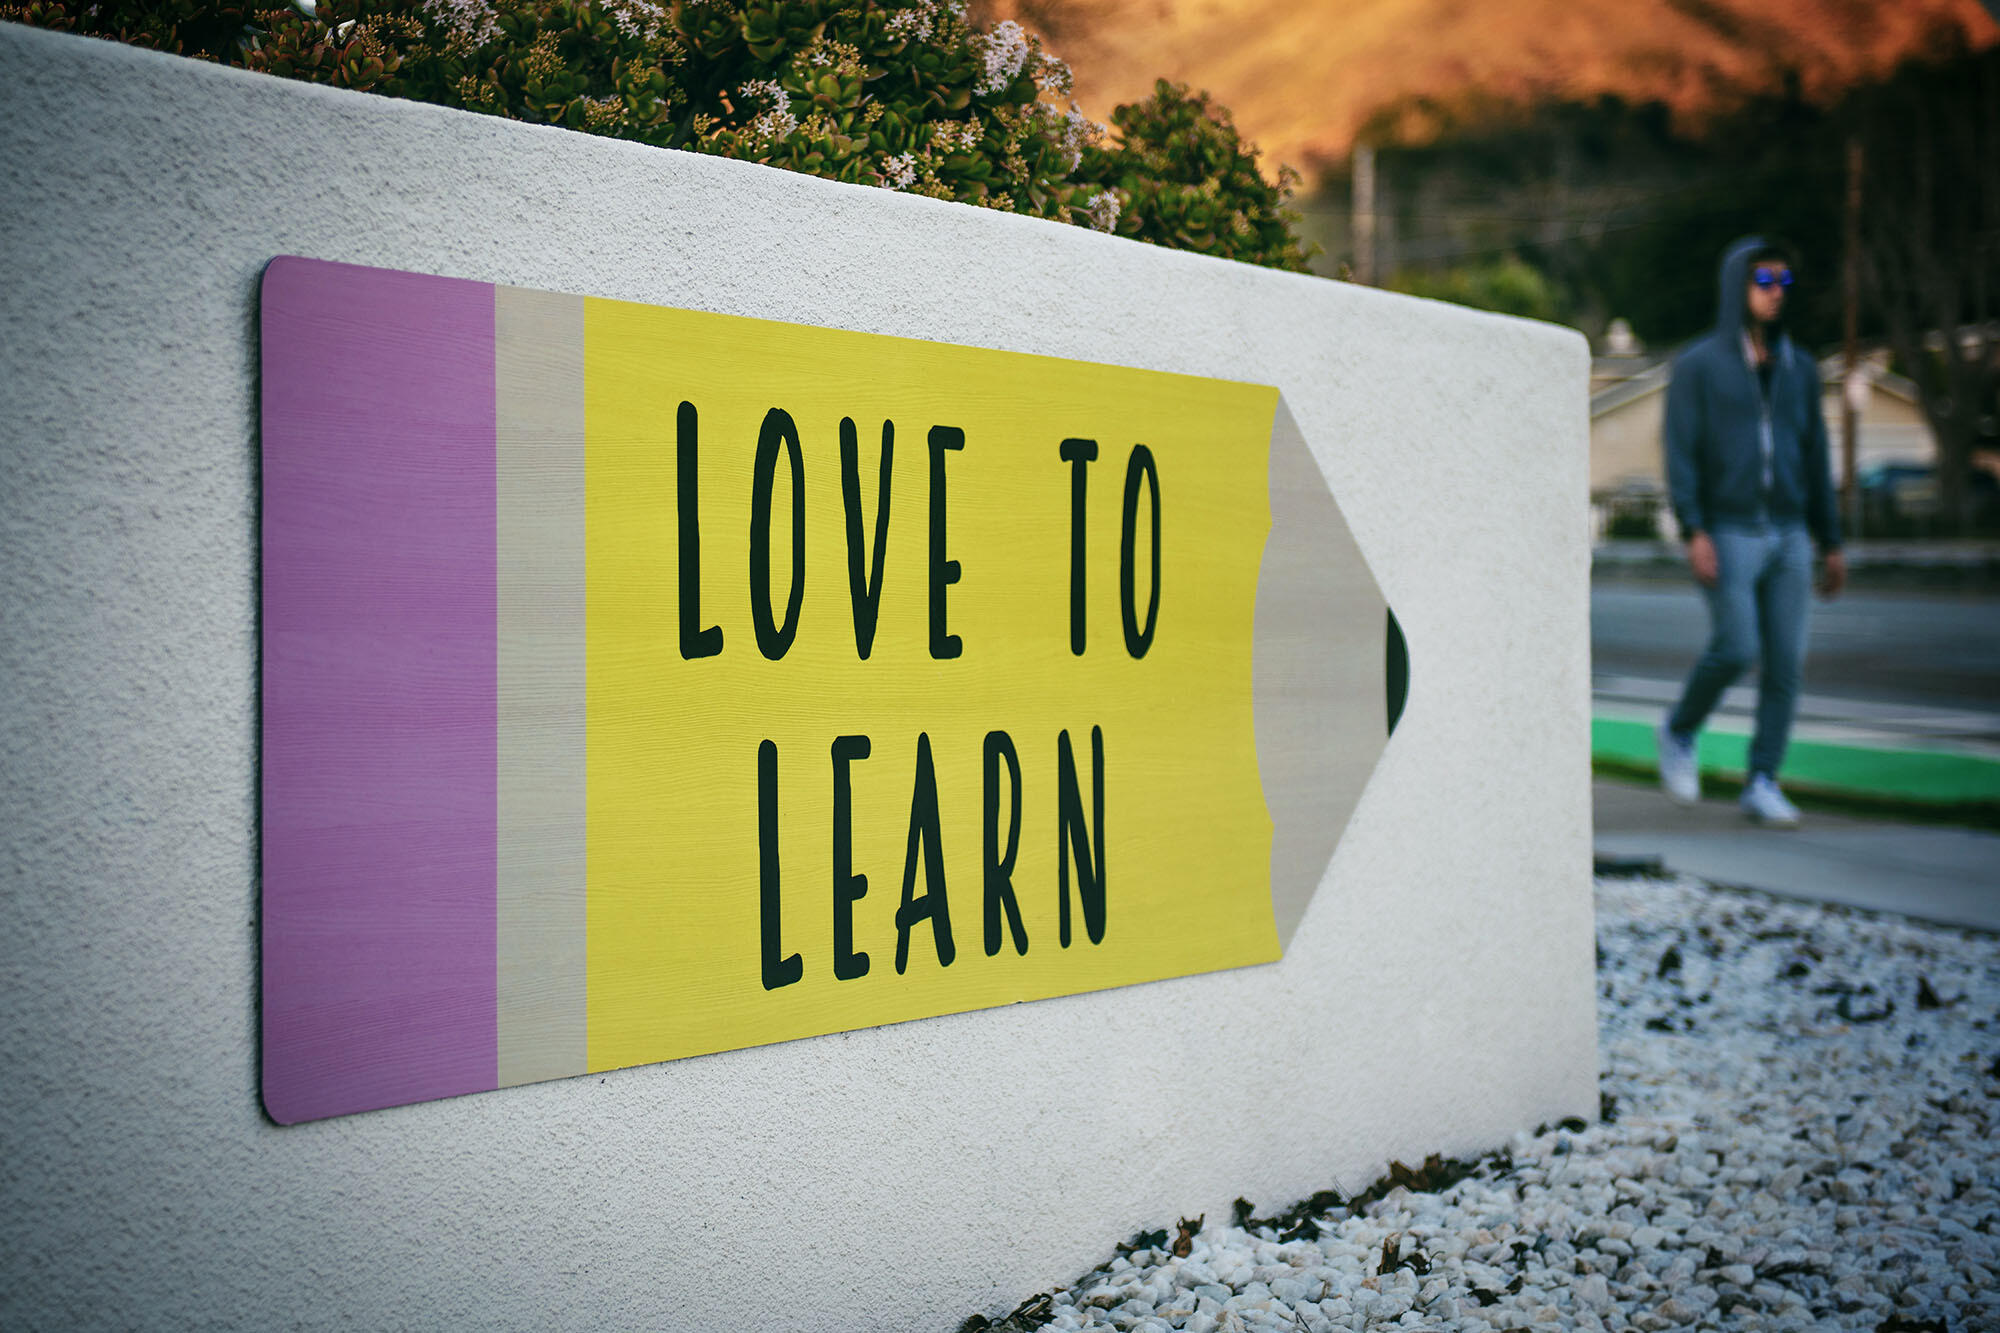 Buntes Schild mit der Aufschrift "LOVE TO LEARN"